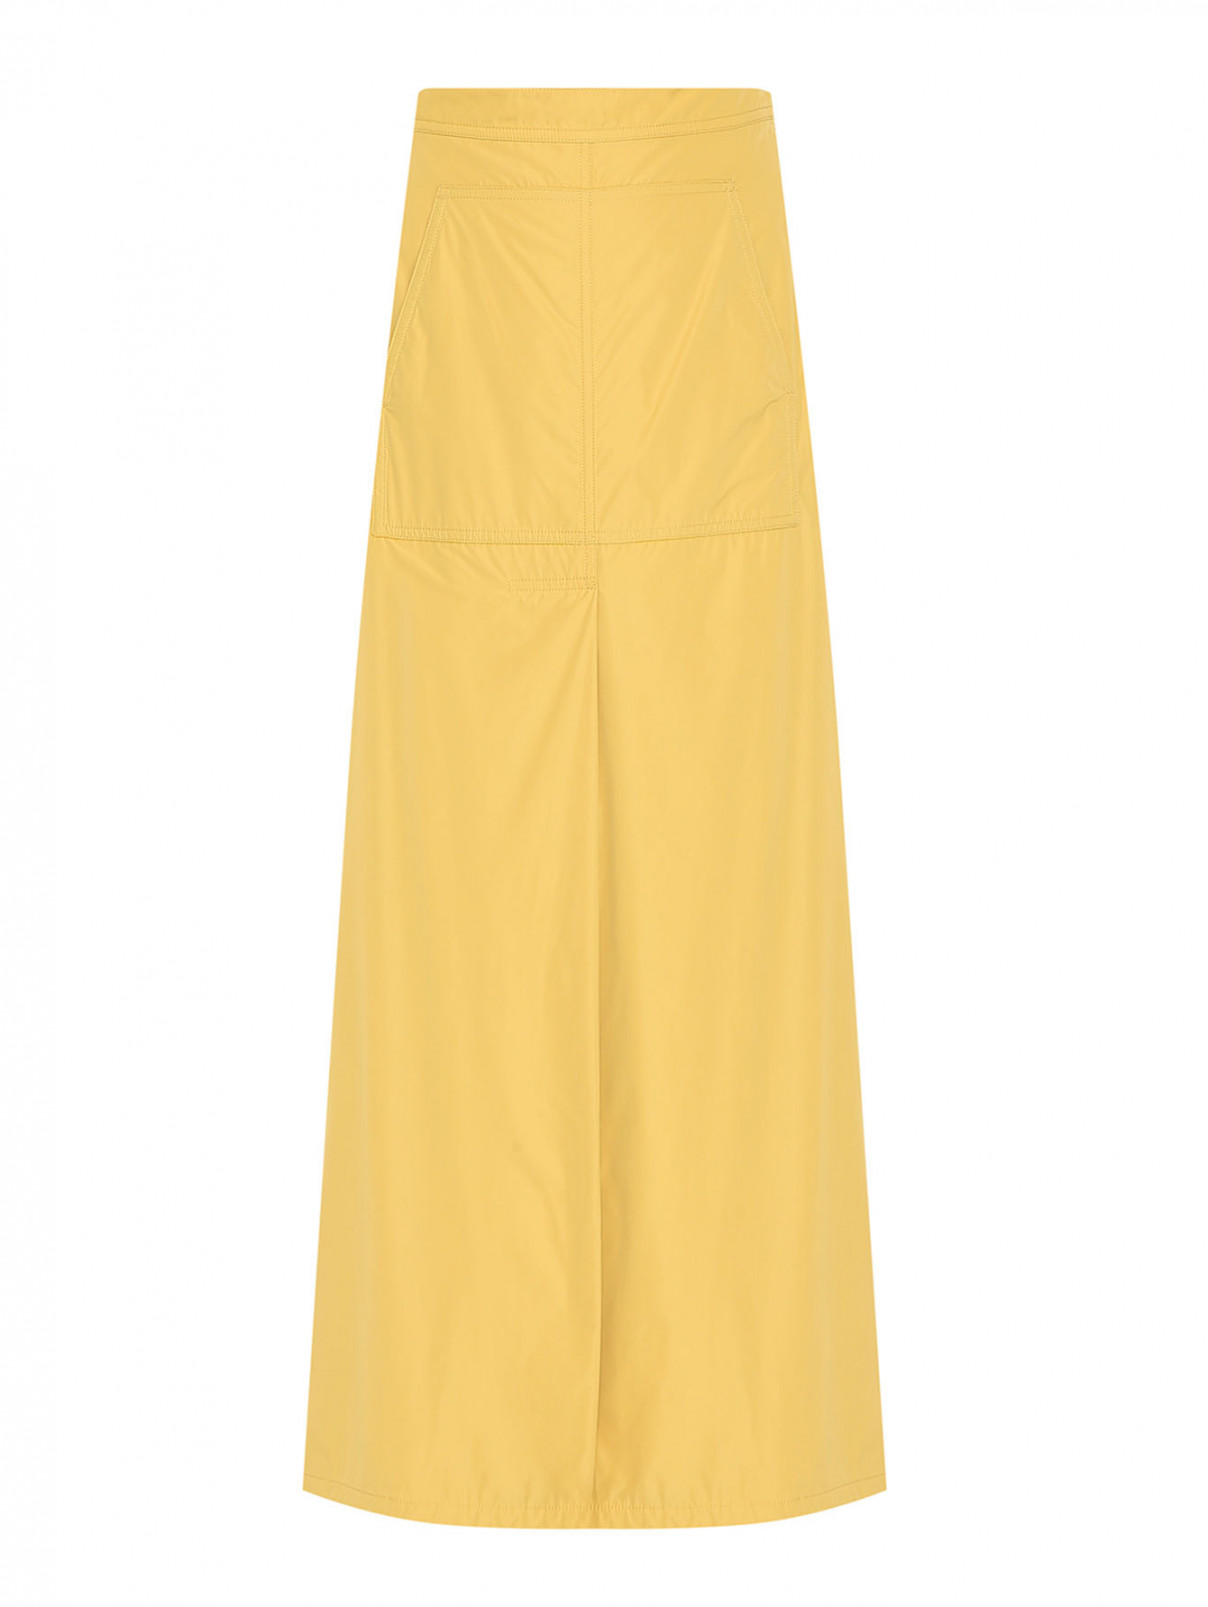 Однотонная юбка из нейлона с карманами Max Mara  –  Общий вид  – Цвет:  Желтый